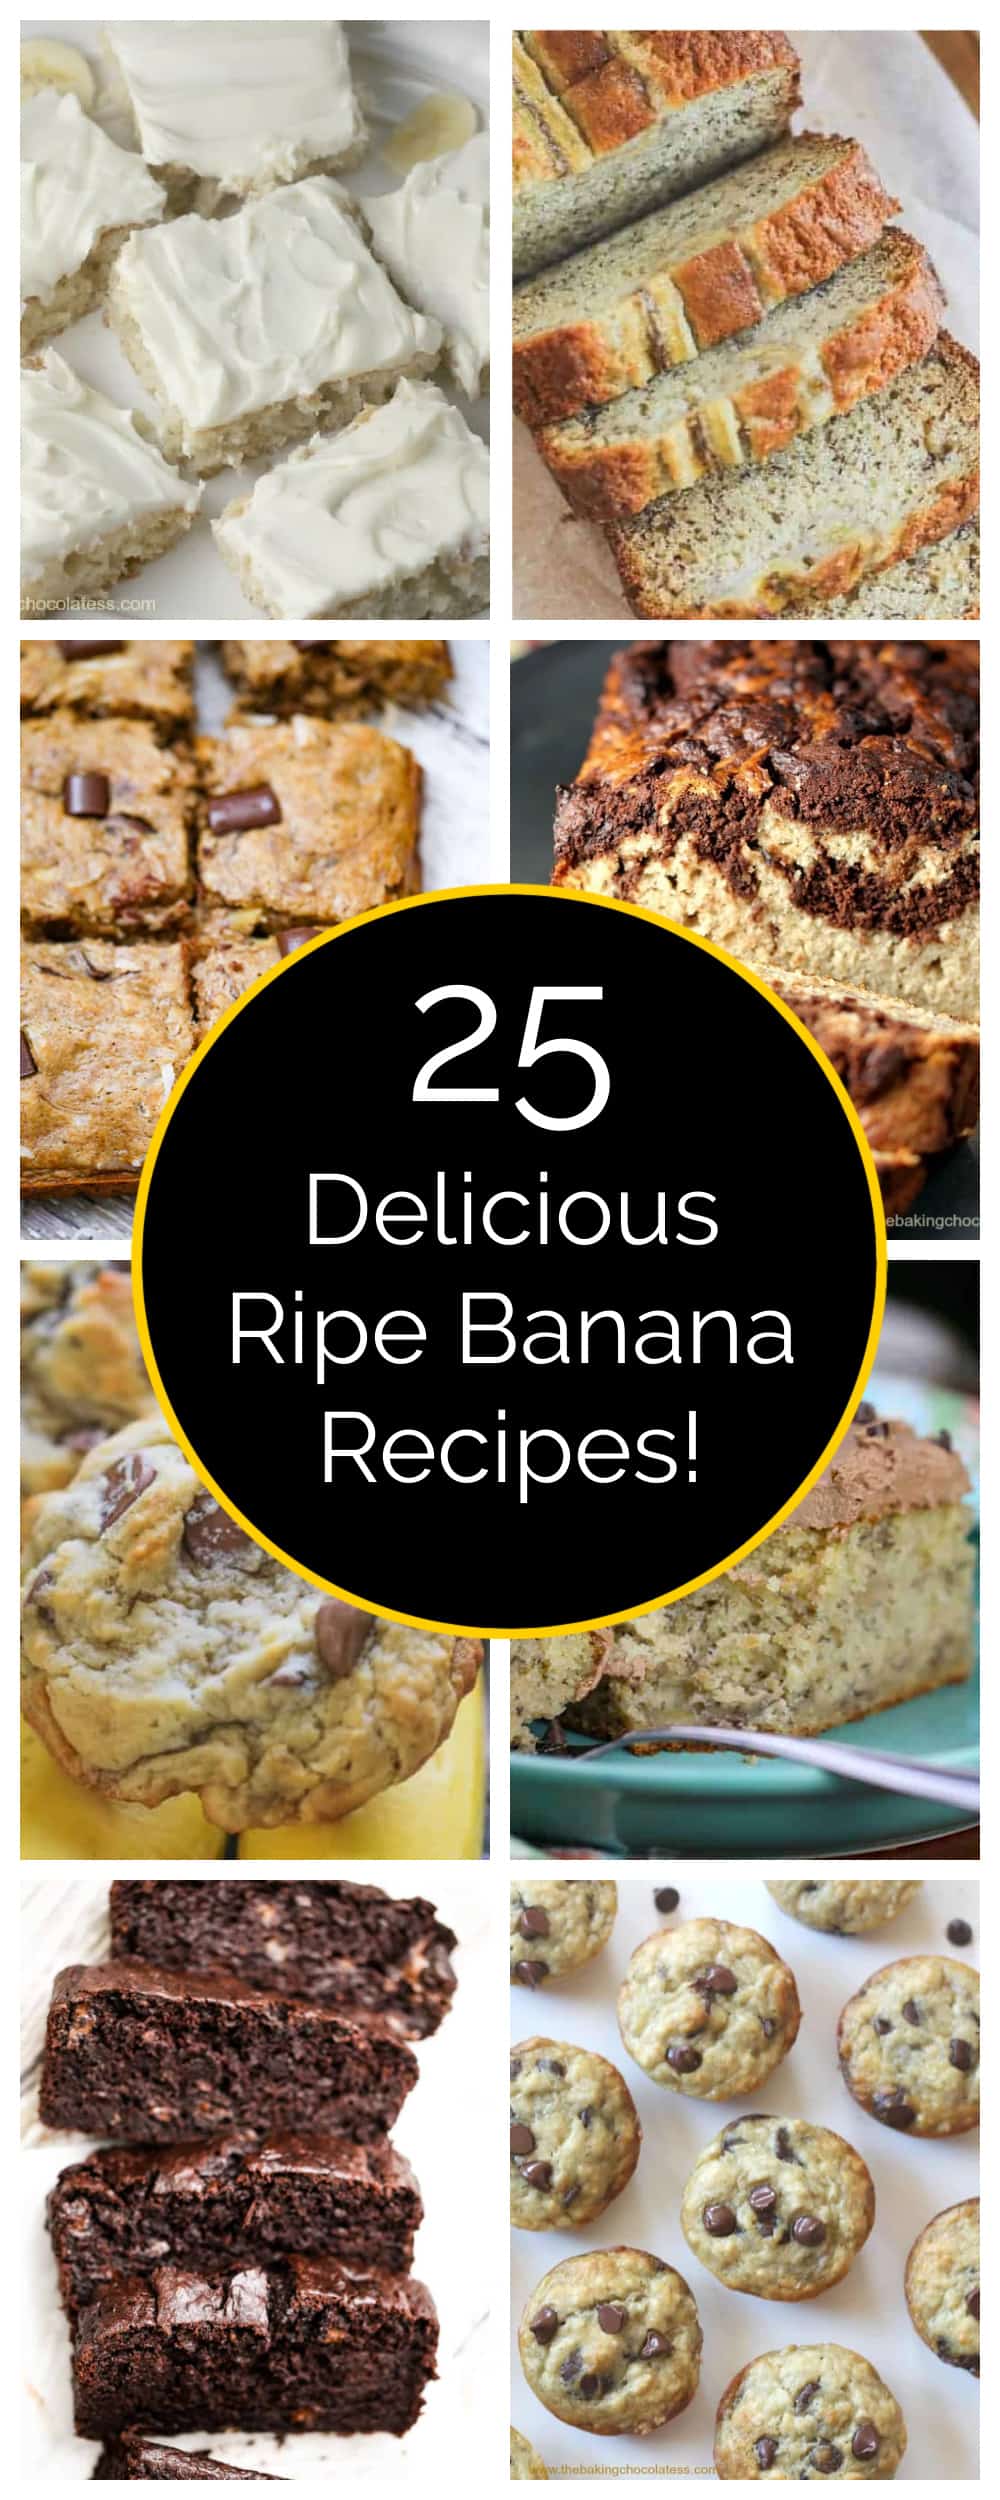 recipes to use ripe bananas